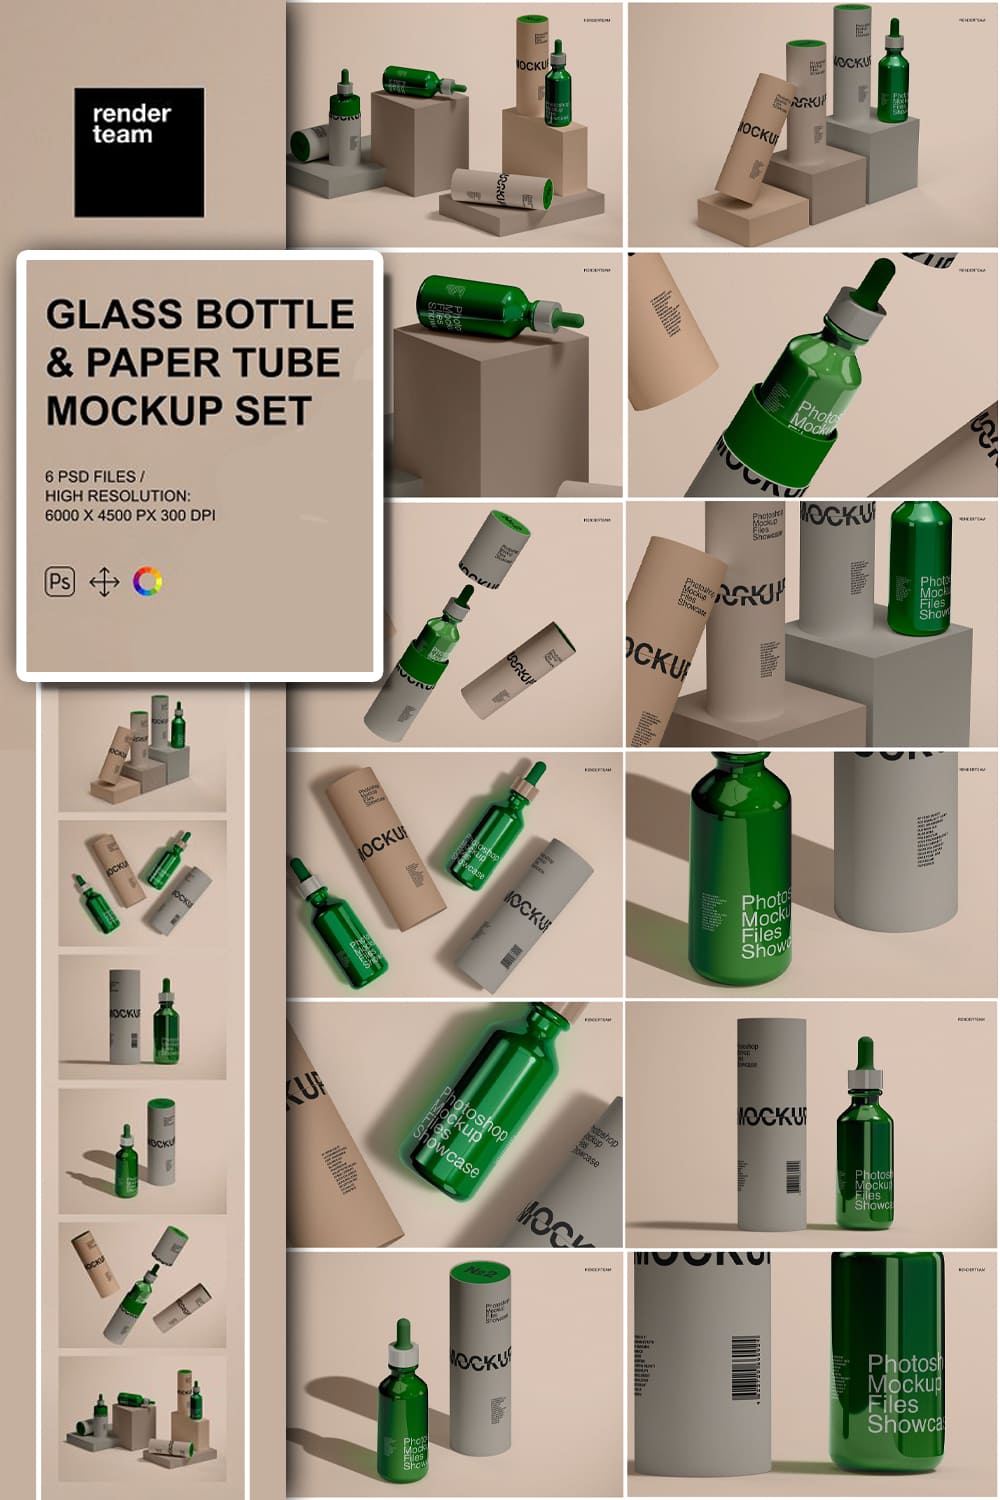 Glass bottle and paper tube mockups of pinterest.